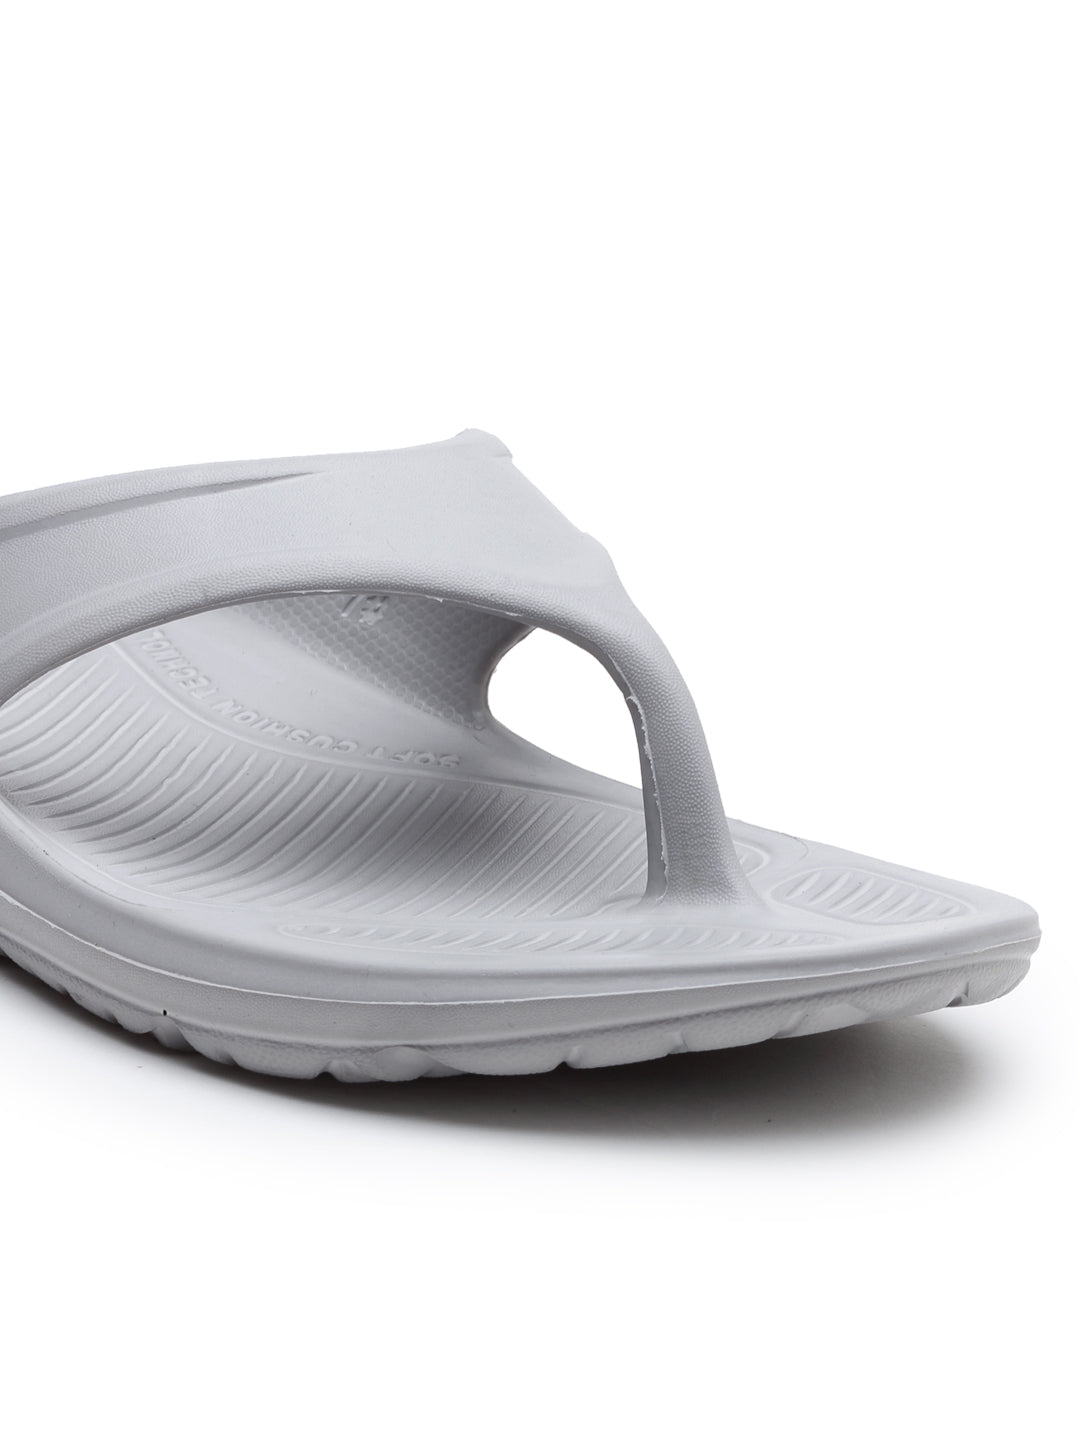 Light Grey Solid EVA Rubber Slip On Casual Slippers For Men